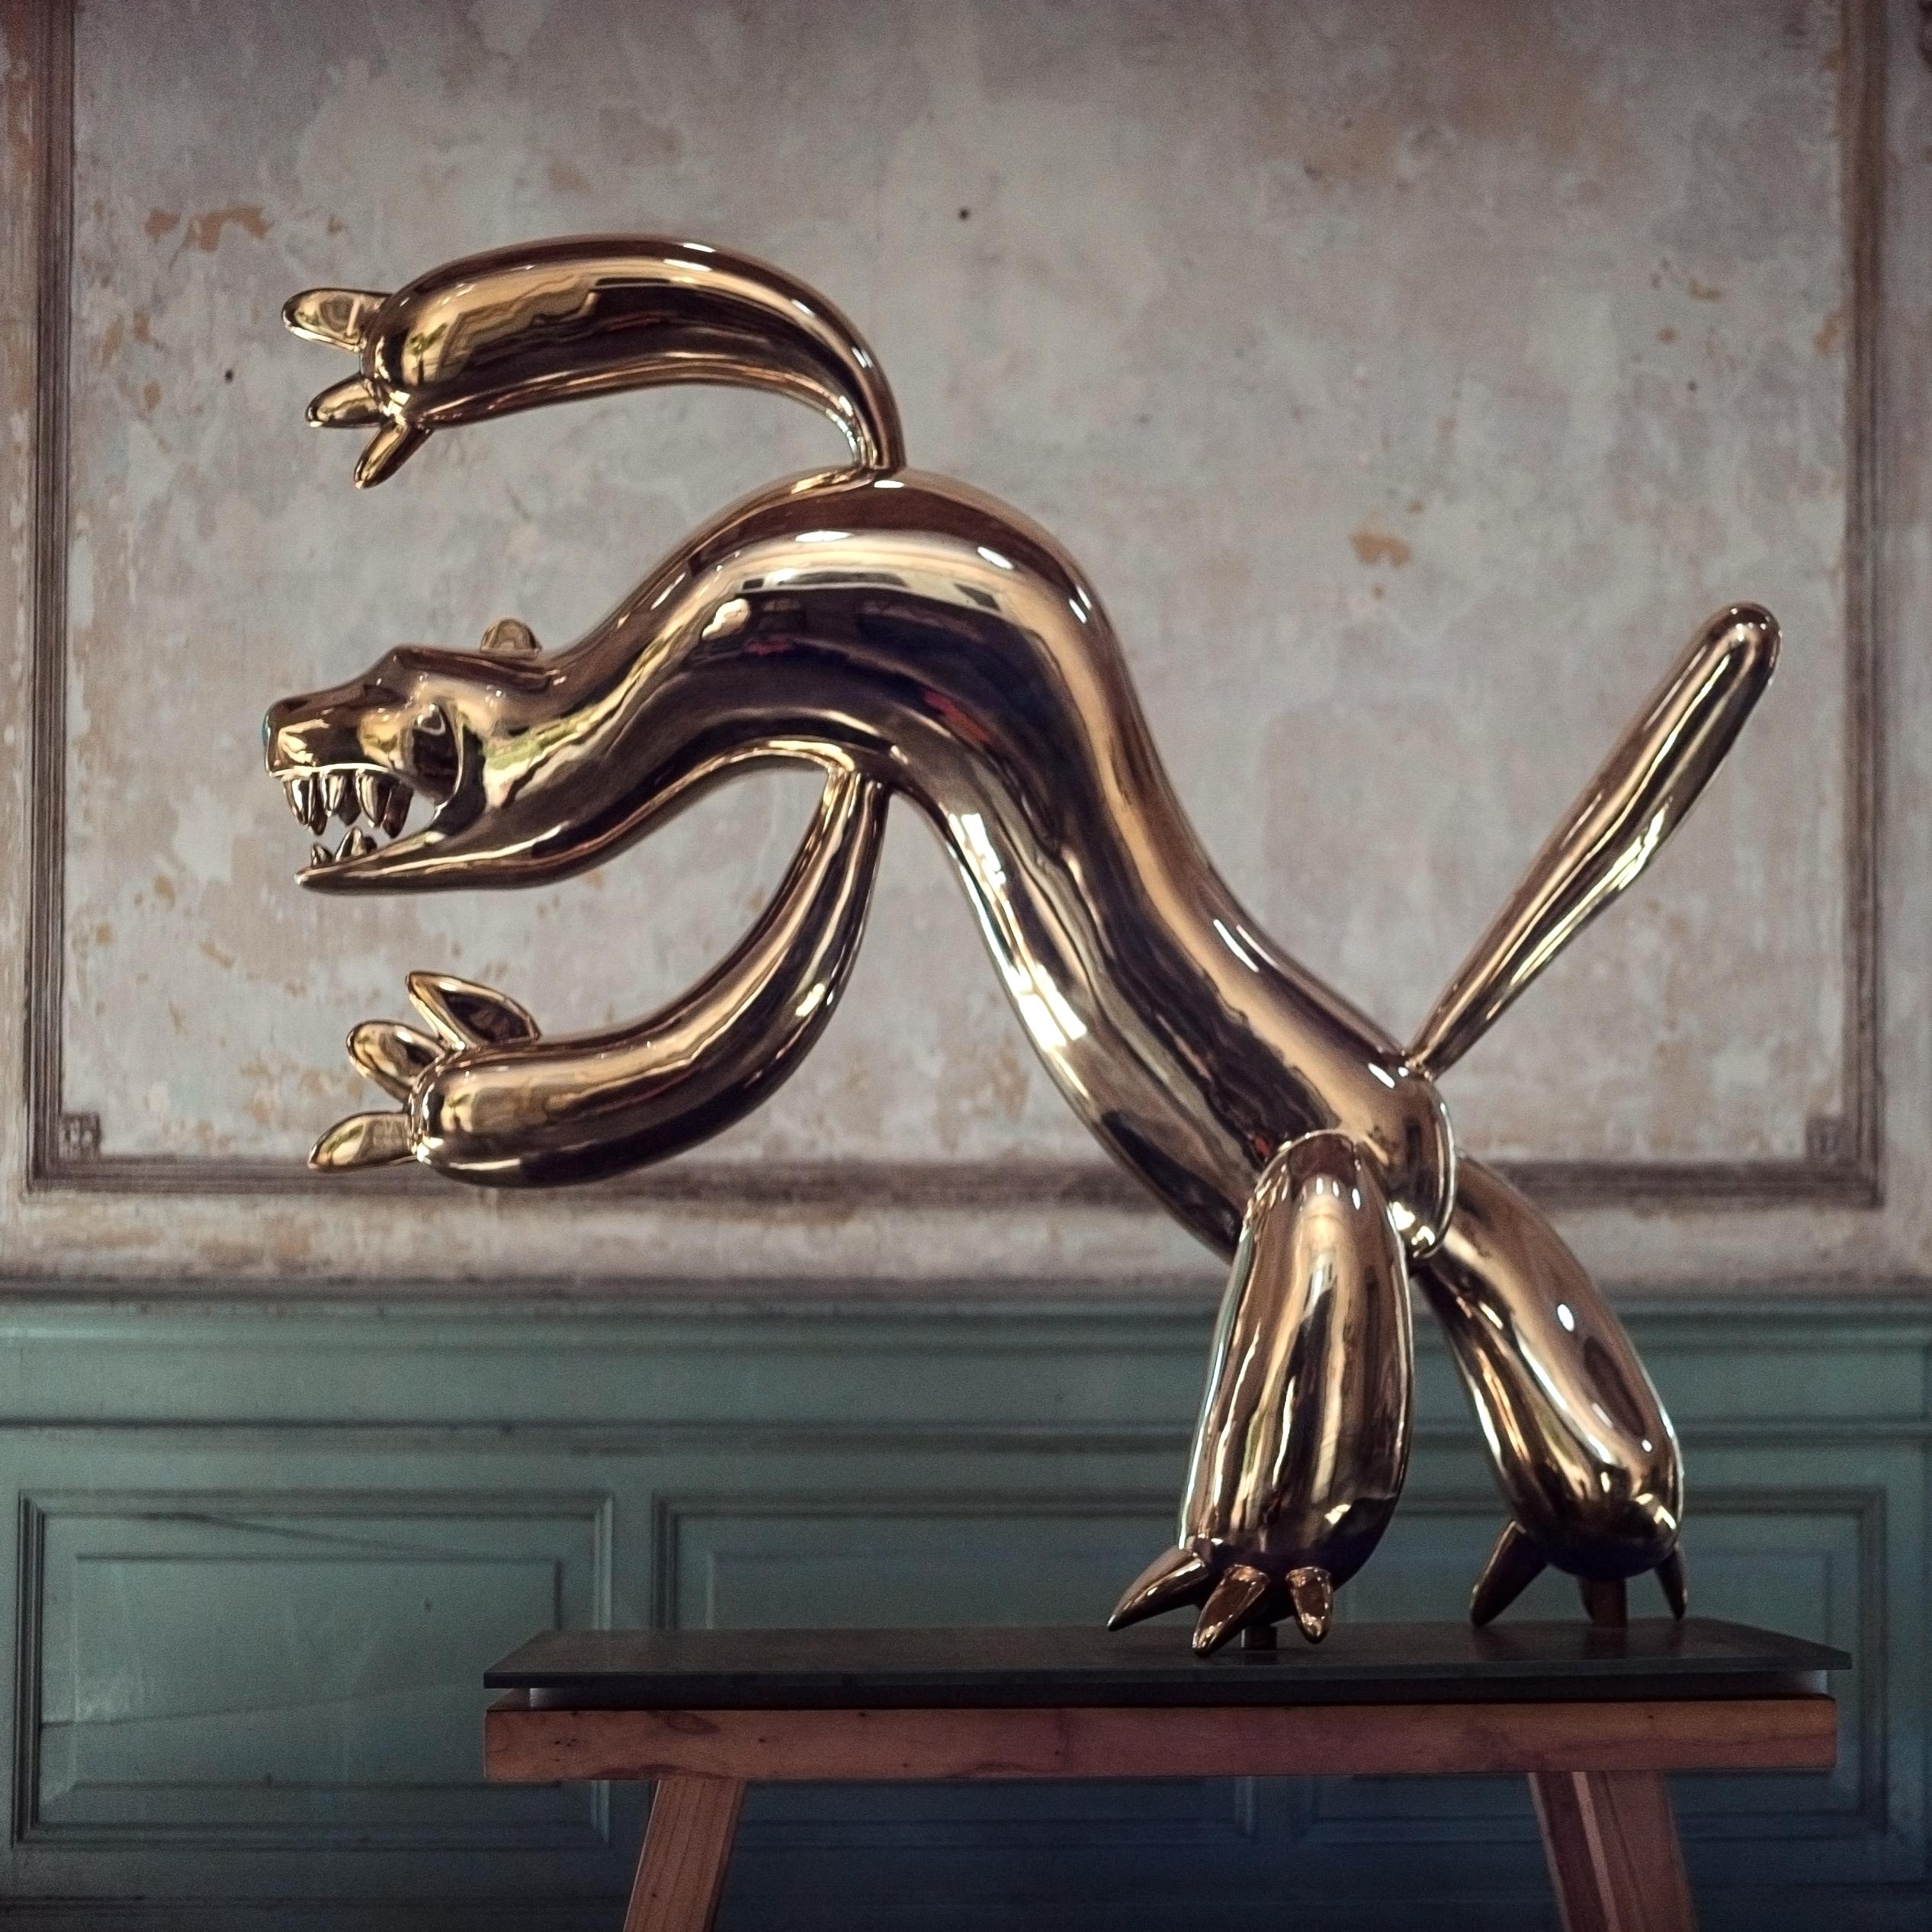 Tiger est une sculpture en bronze poli de l'artiste contemporain Marcelo Martin Burgos, dont les dimensions sont de 130 × 150 × 30 cm (51,2 × 59,1 × 11,8 in). 
La sculpture est signée et numérotée, elle fait partie d'une édition limitée à 12